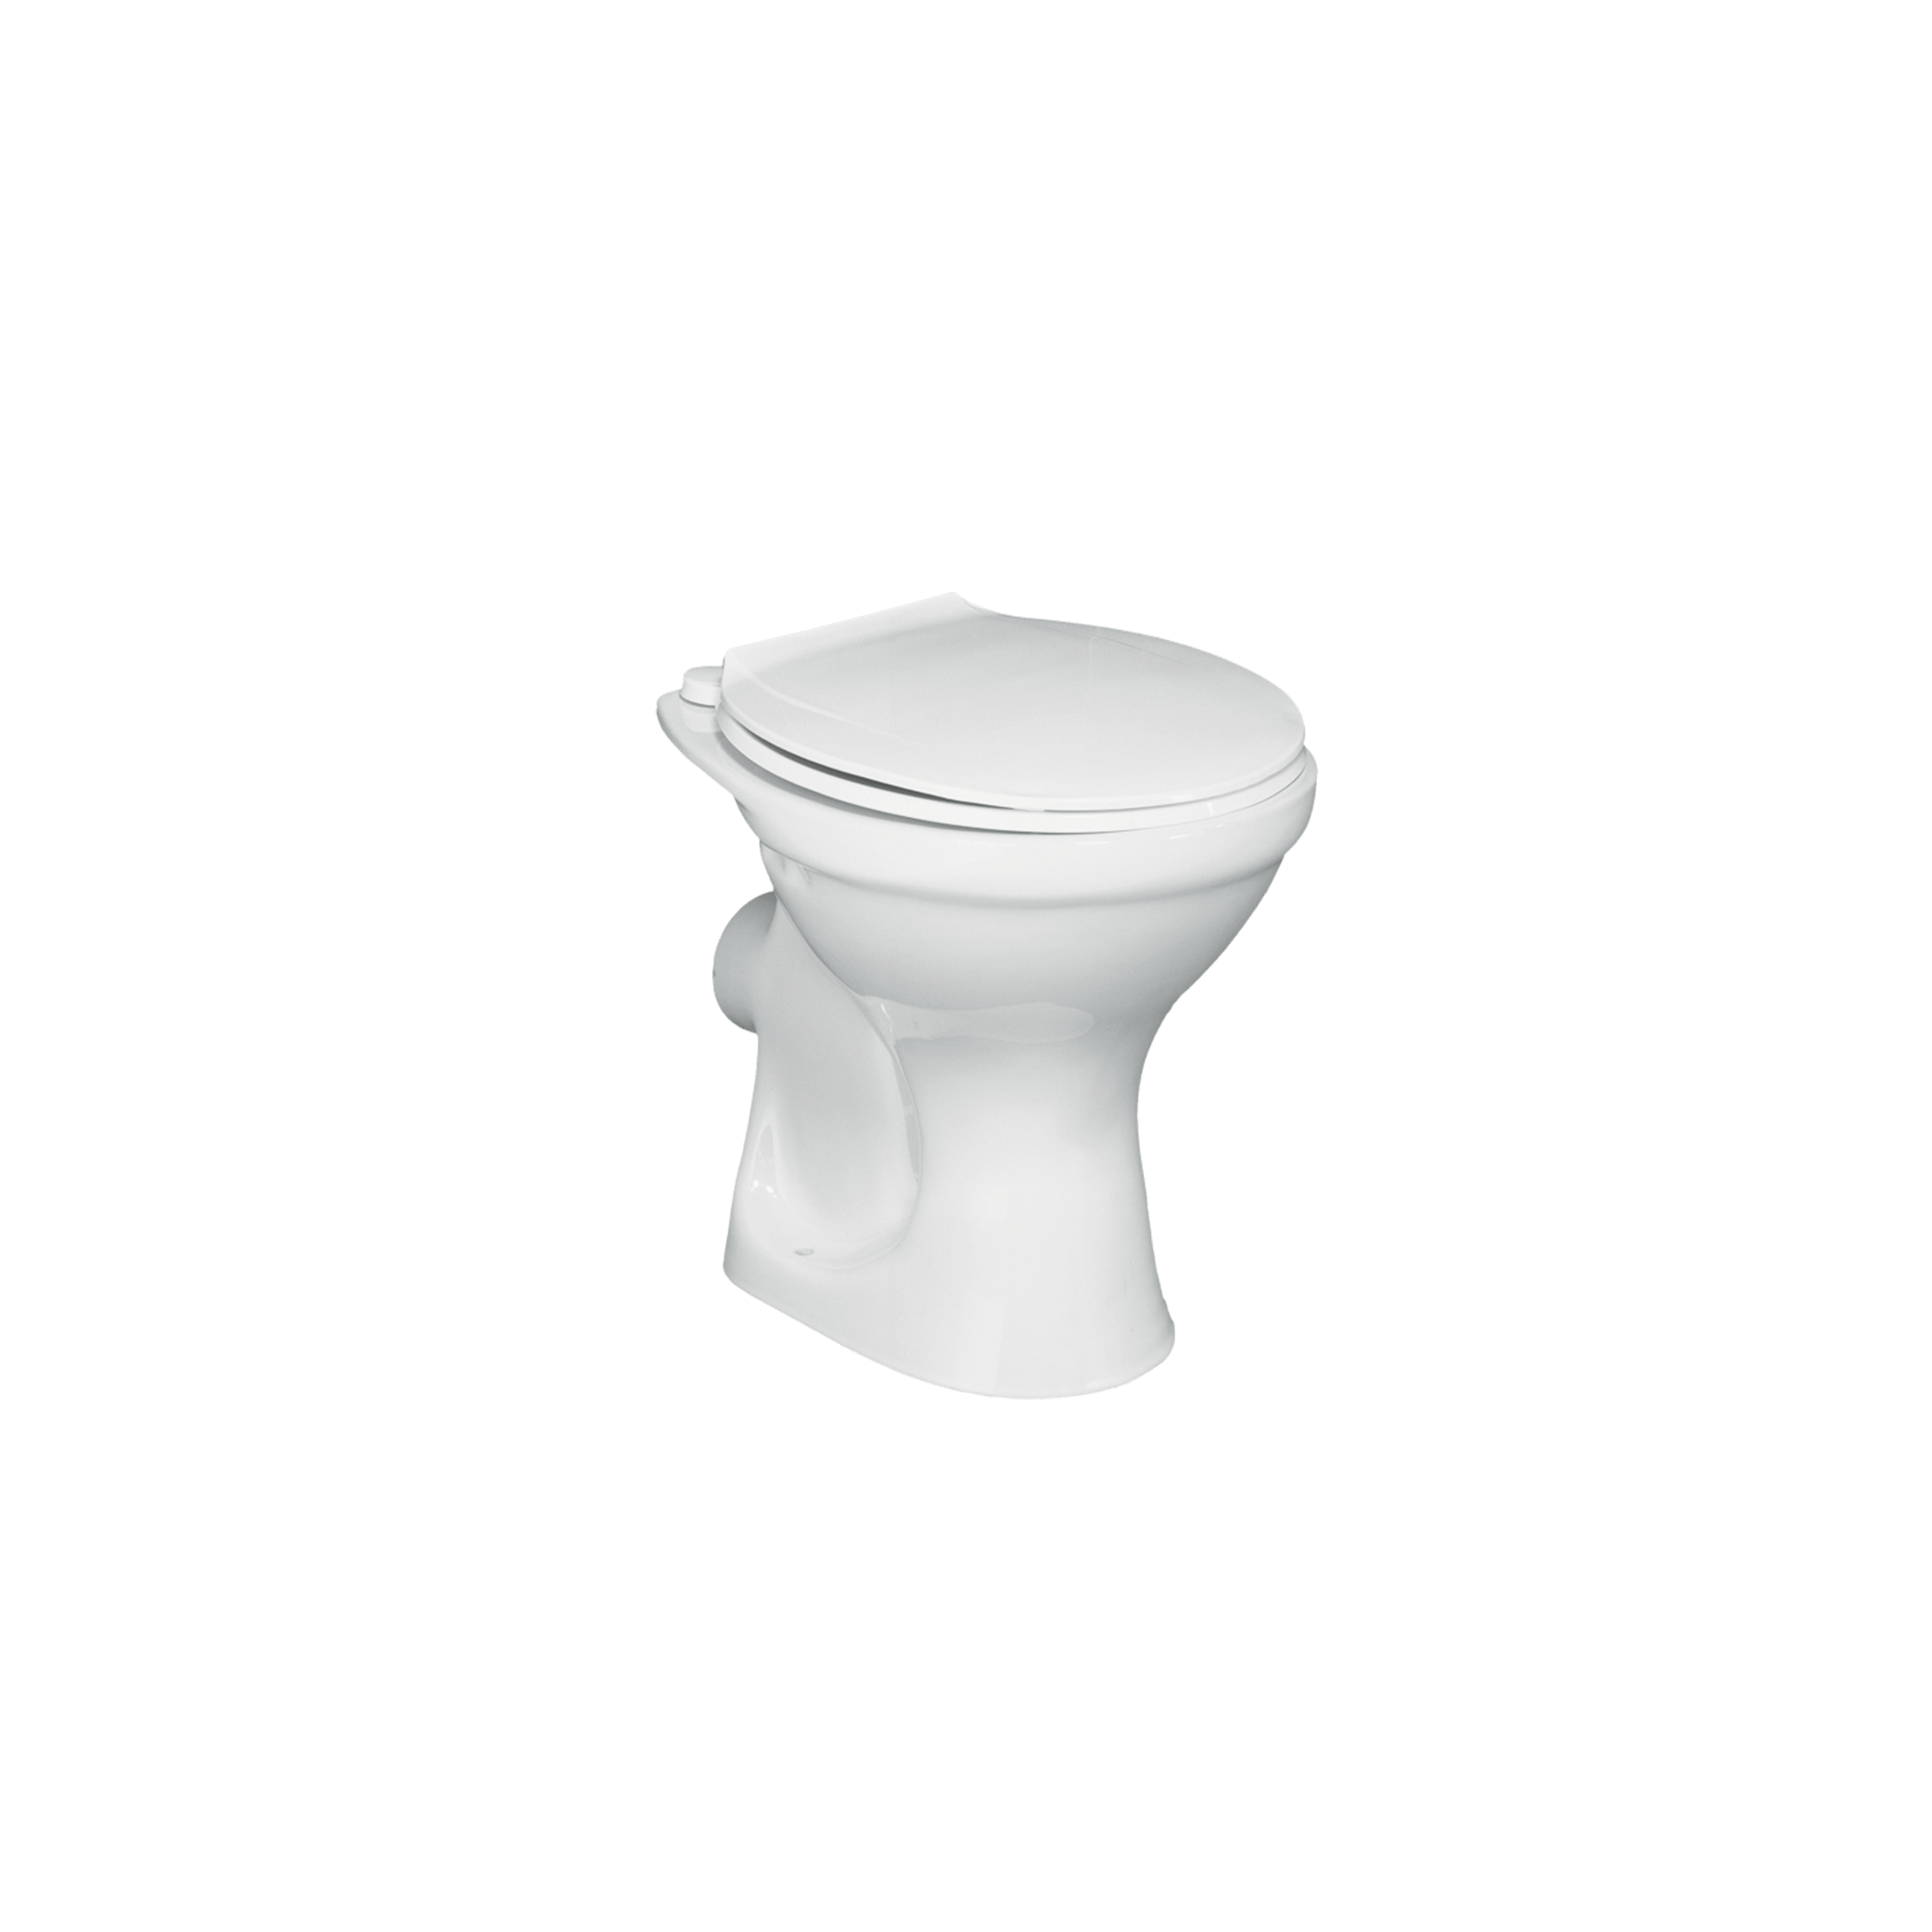 WC Šolja | Turkuaz Ceramic - Baltik 5100 W 